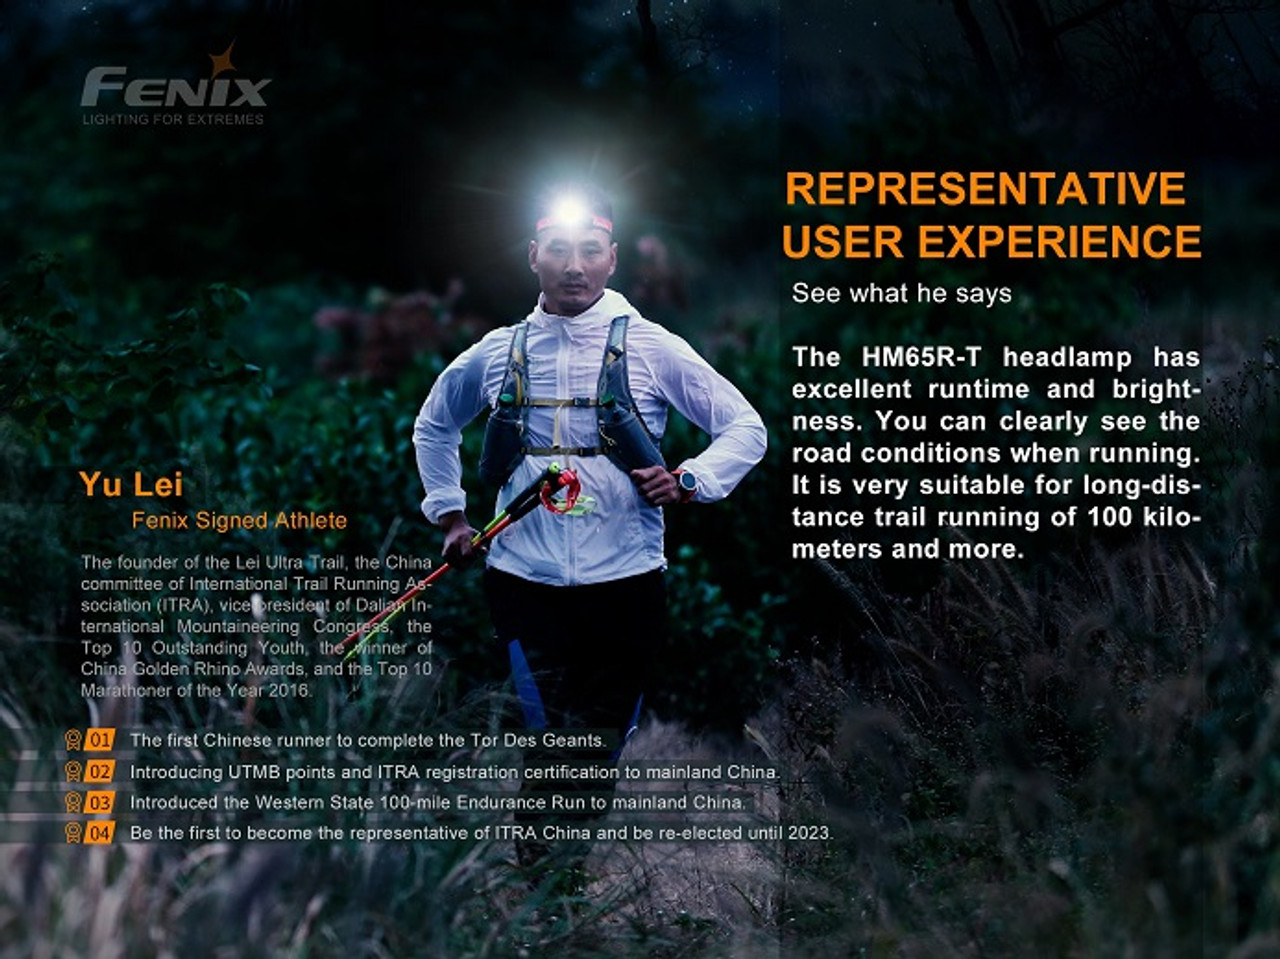 HM65R-T - Fenix 1500 Lumen Rechargeable LED Headlamp